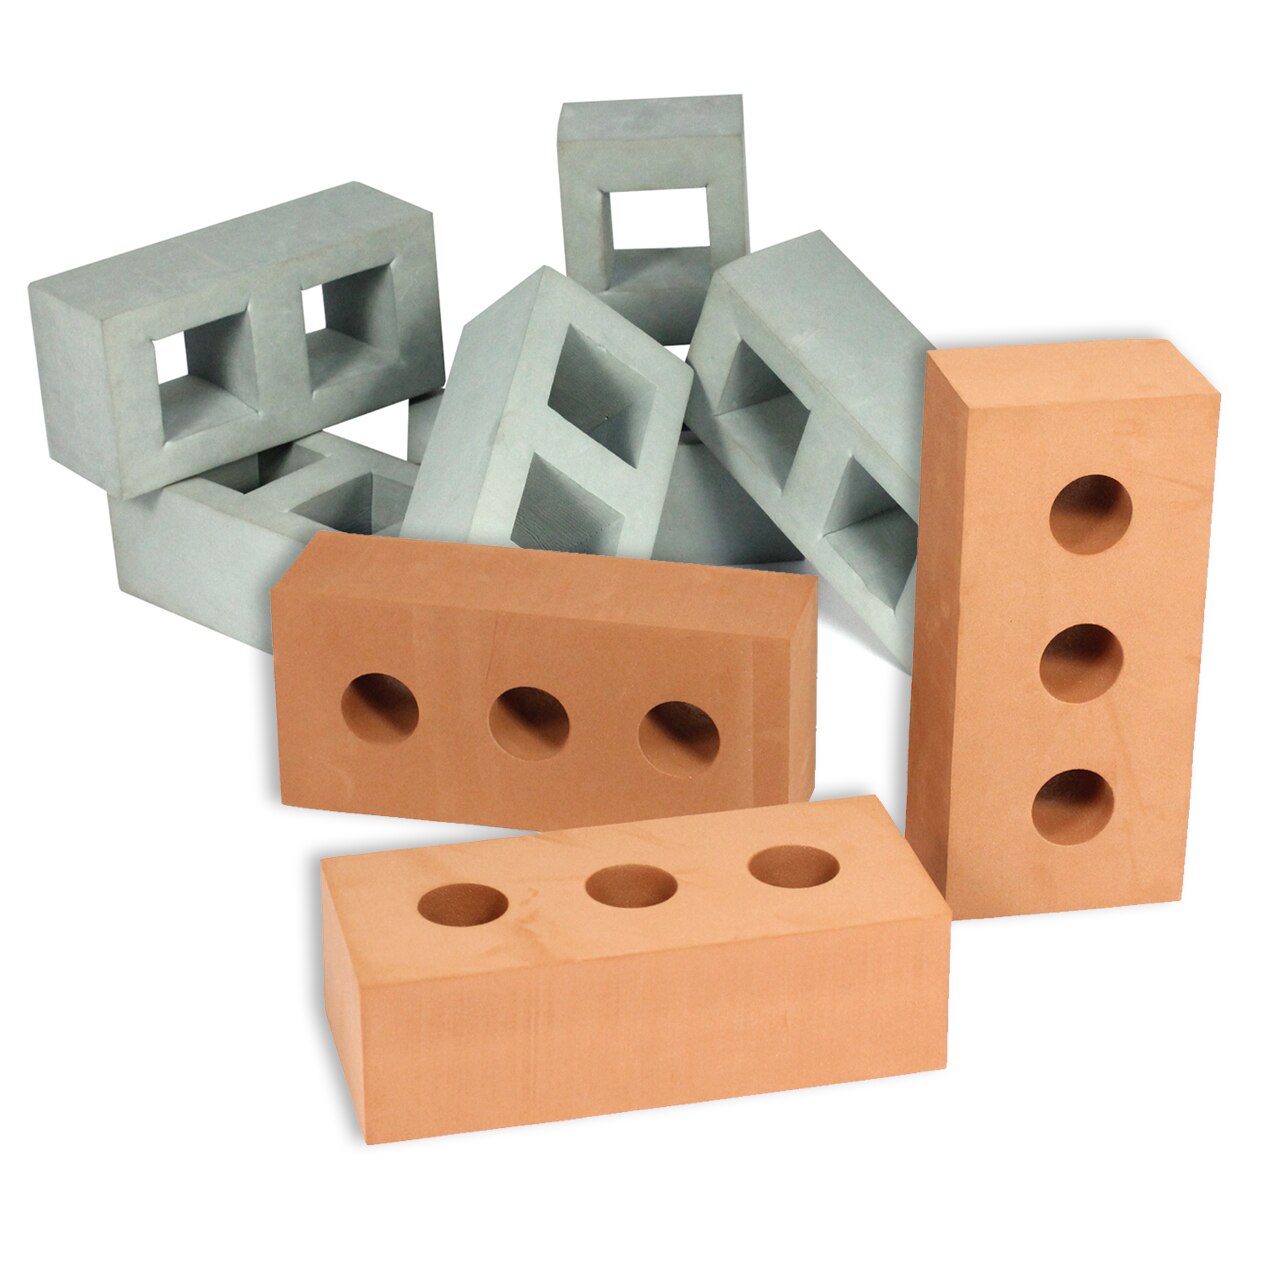 Foam Bricks & Breeze Blocks - 45pc